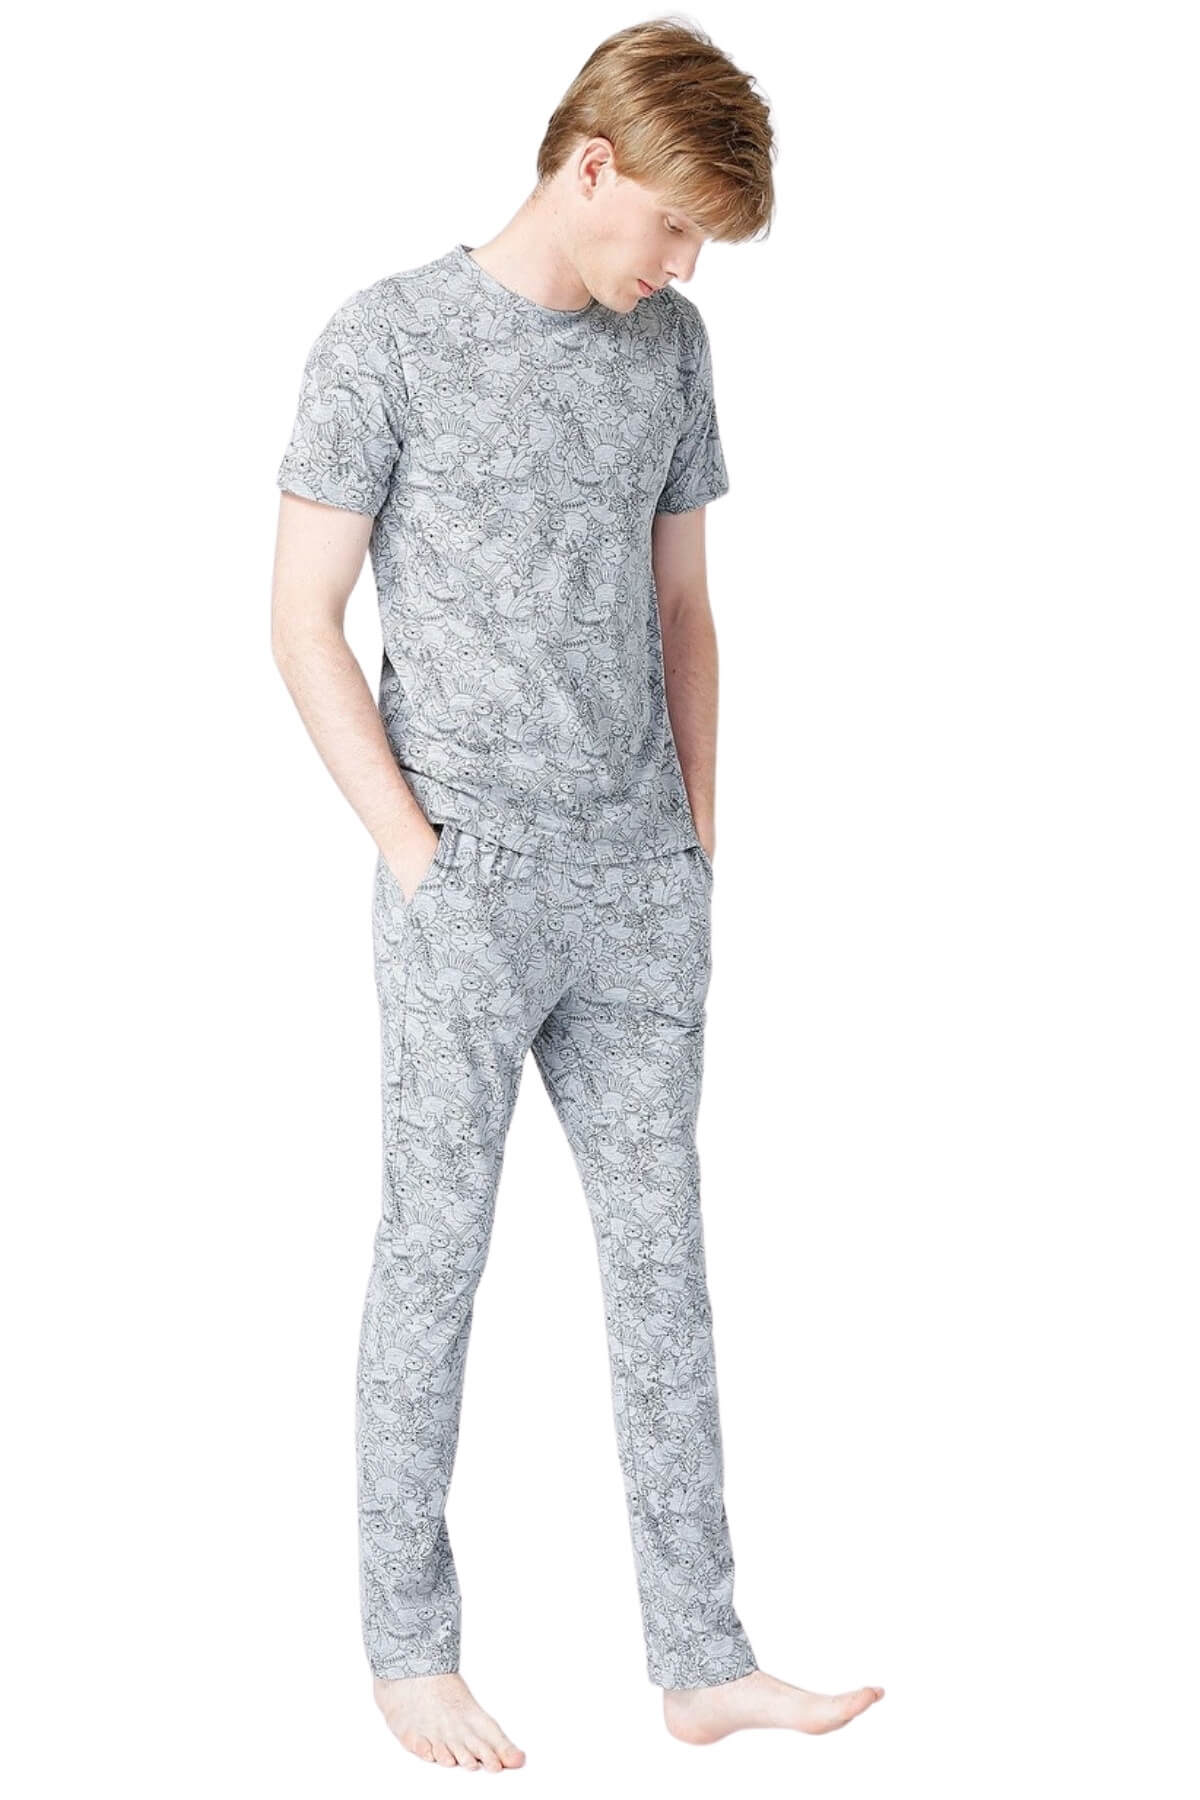 Fabrika Standart Desenli Erkek Pijama Takımı